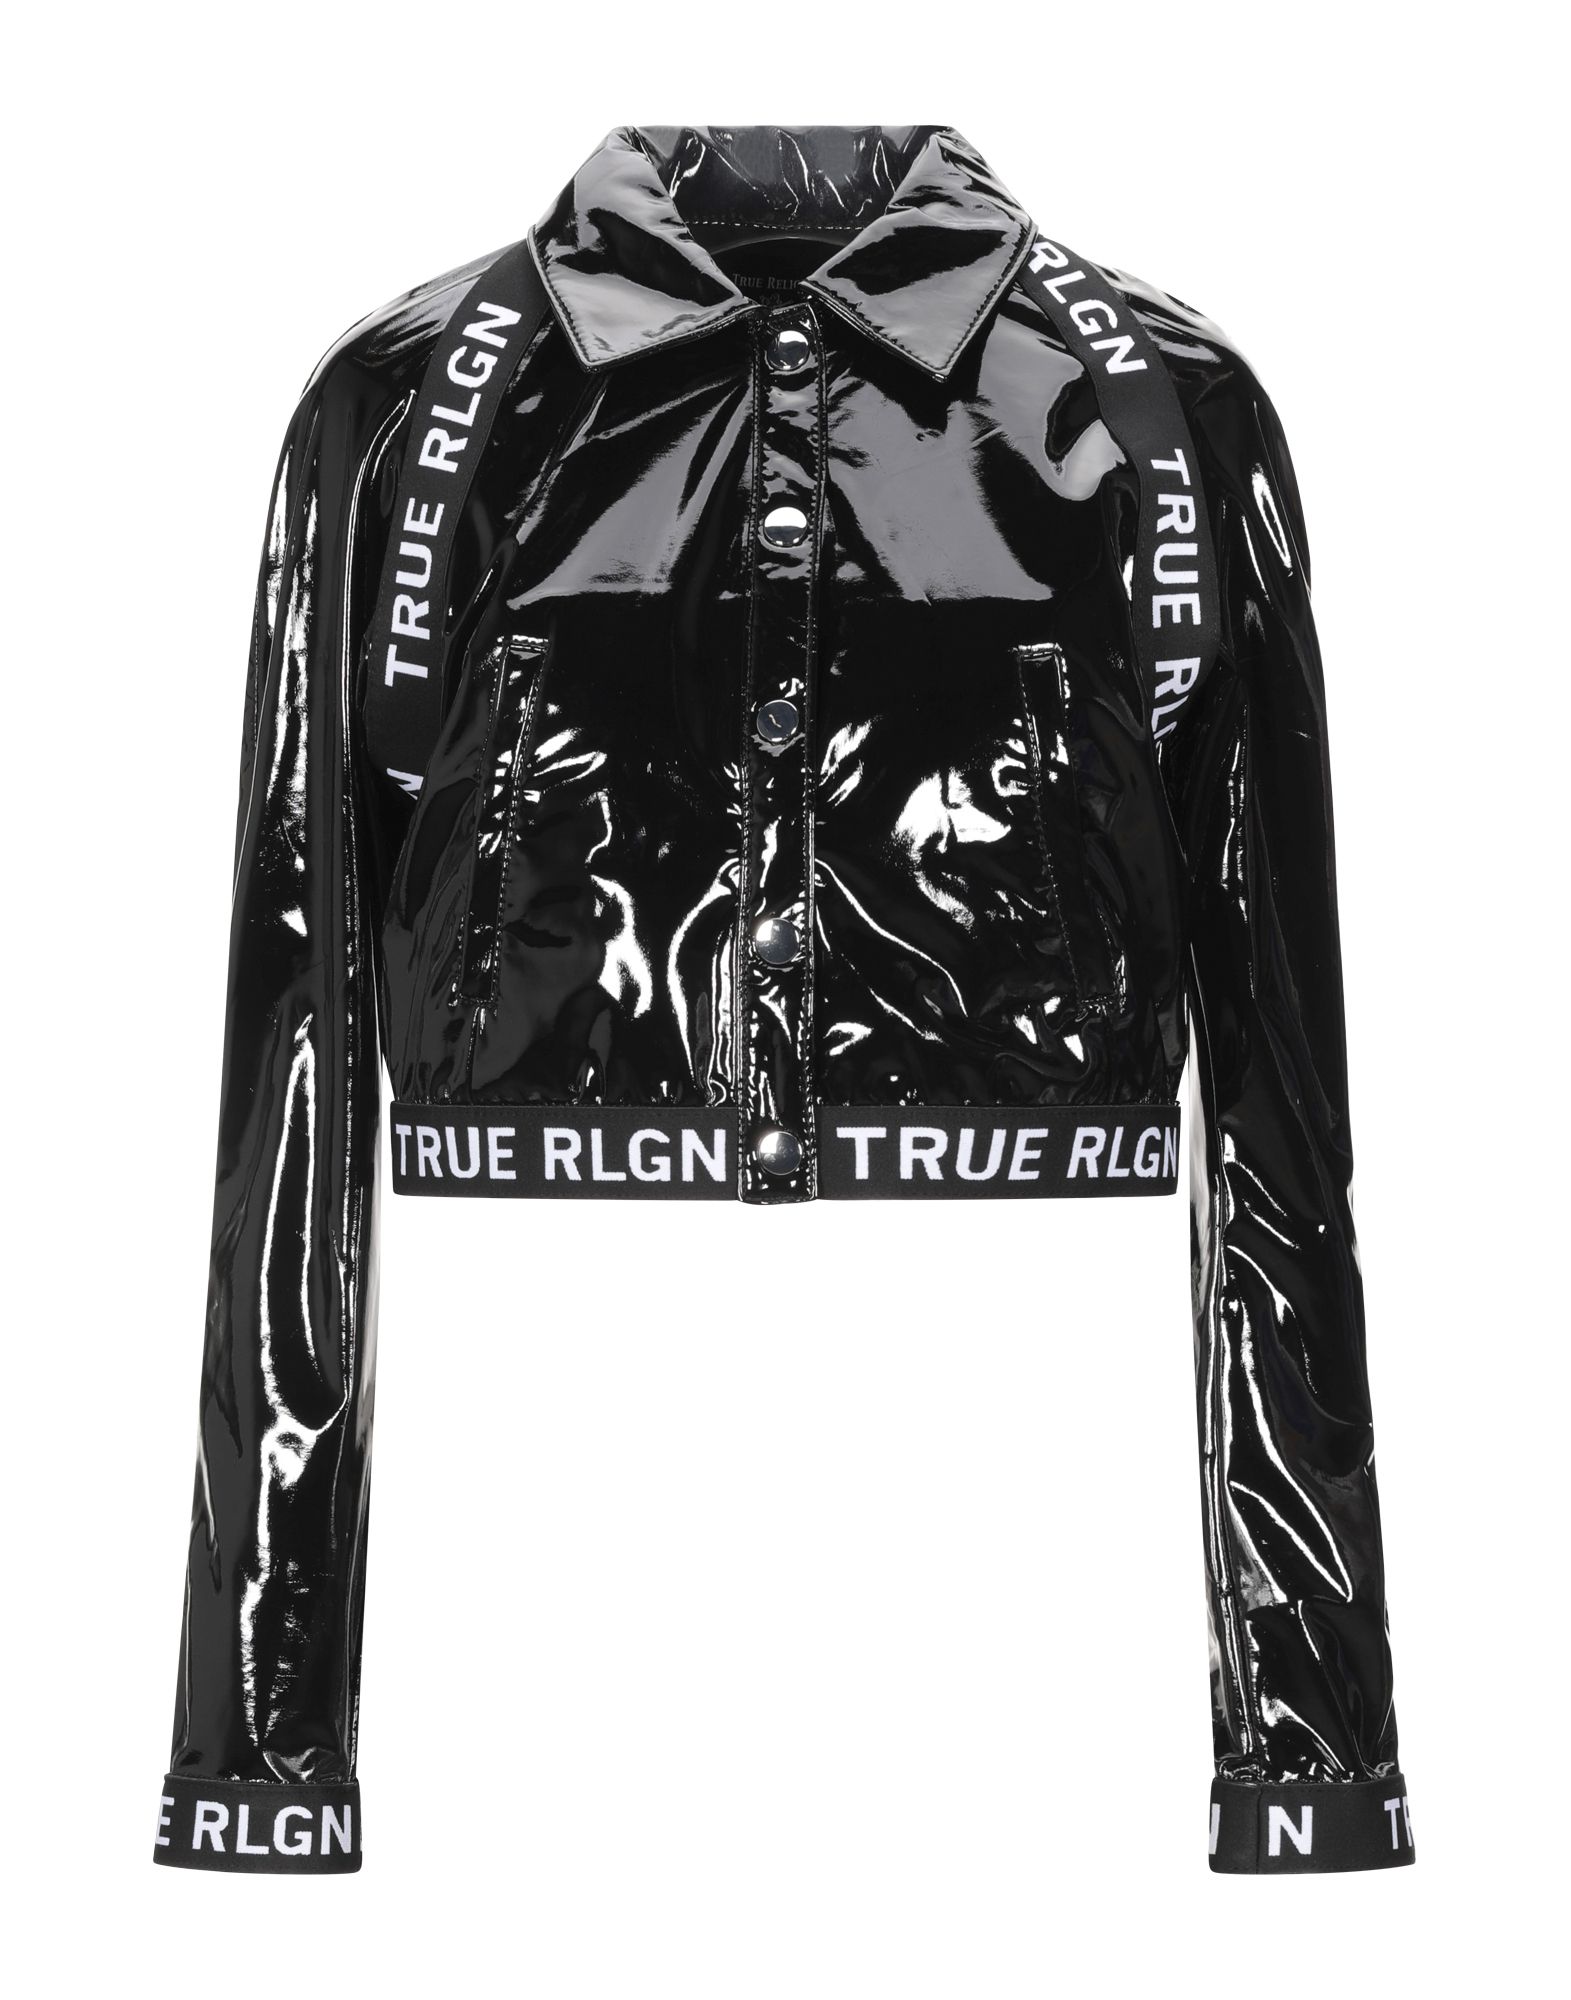 Одежда true. Куртка true Religion. Пуховик true Religion. Куртка Religion Jacket. True Religion куртка женская.